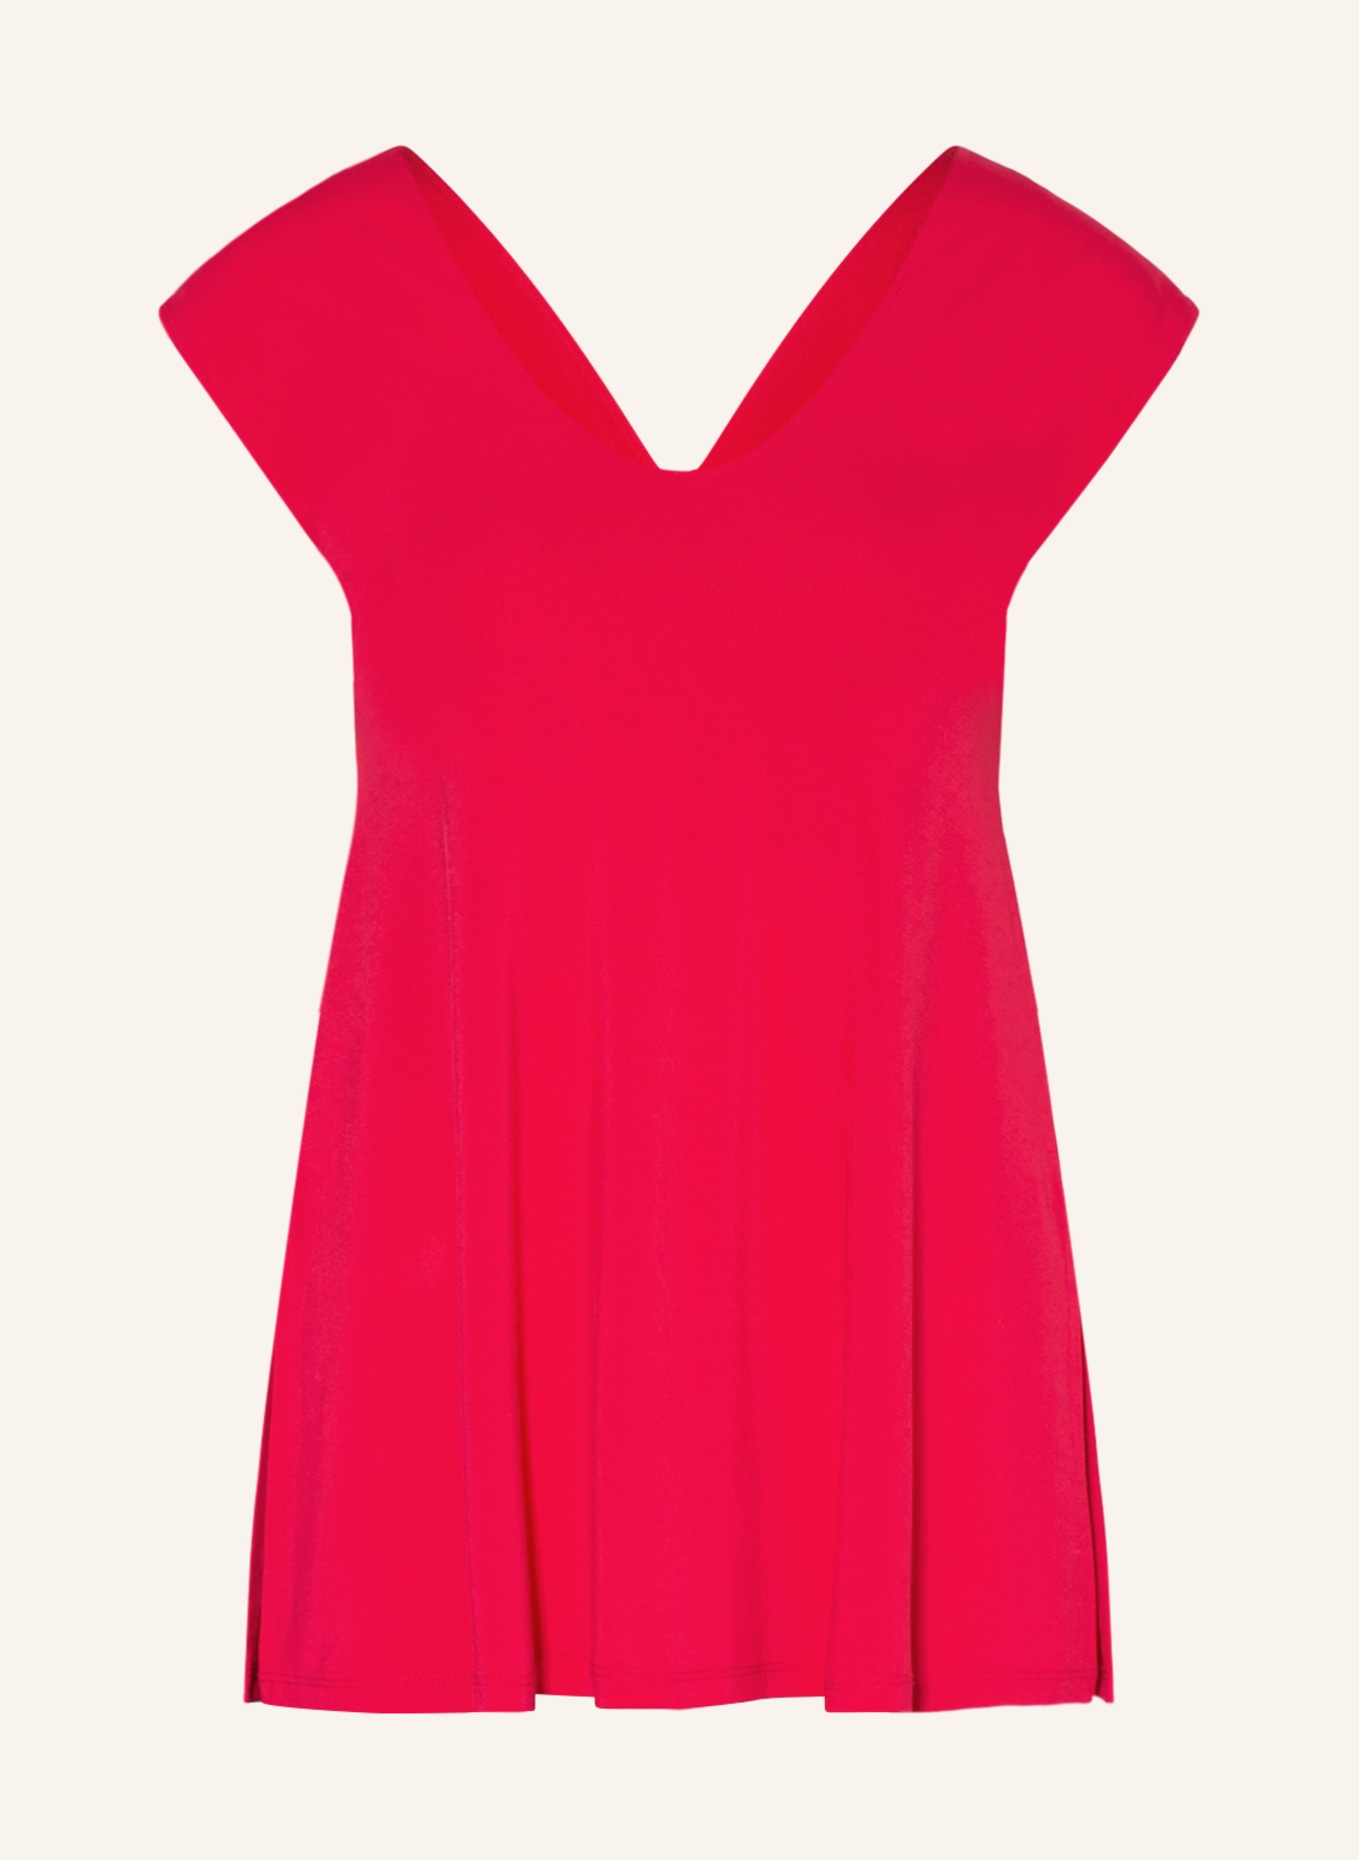 RIANI Blouse top , Color: FUCHSIA (Image 1)